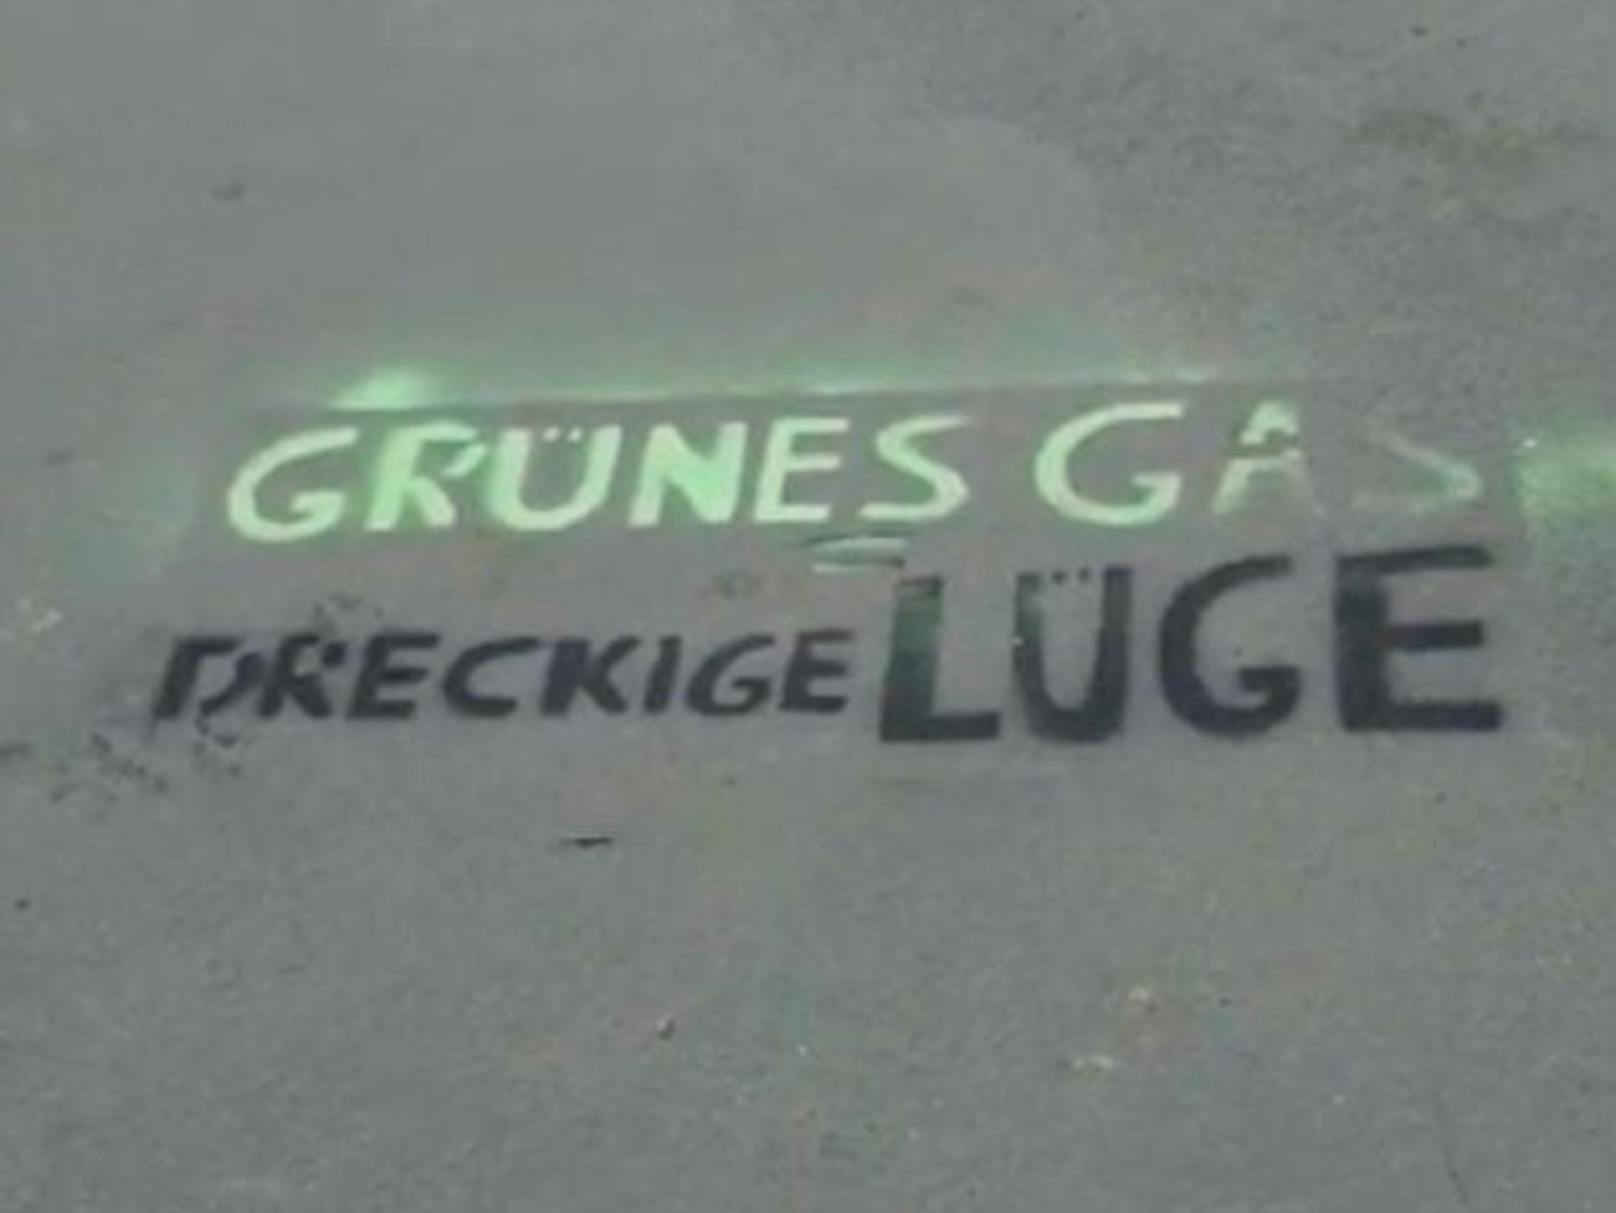 Vor dem Wahrzeichen hatten die Täter eine Parole auf den Boden gesprayt: "Grünes Gas. Dreckige Lüge".